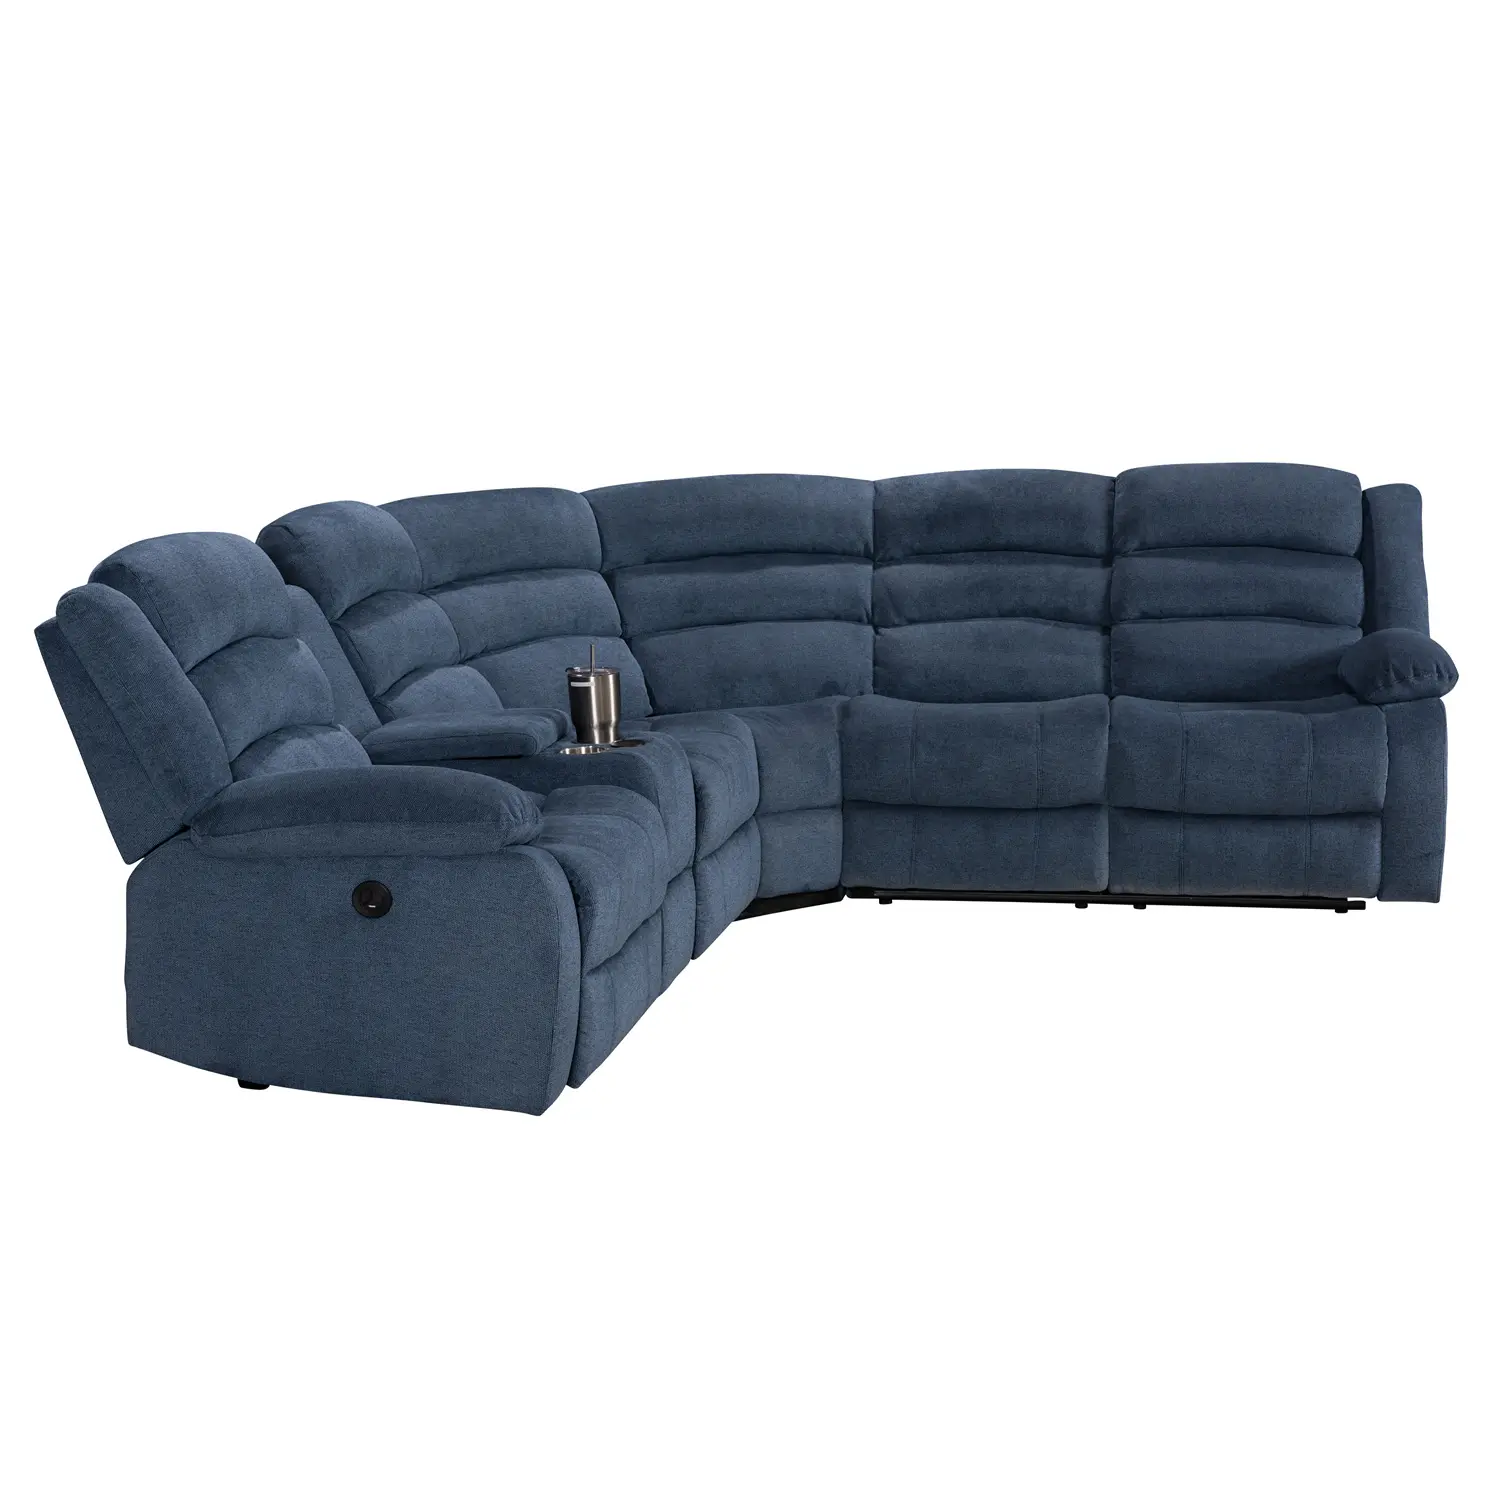 Best Seller divano moderno in pelle ad angolo semplice soggiorno divano in pelle di lusso italiano divano componibile a forma di l